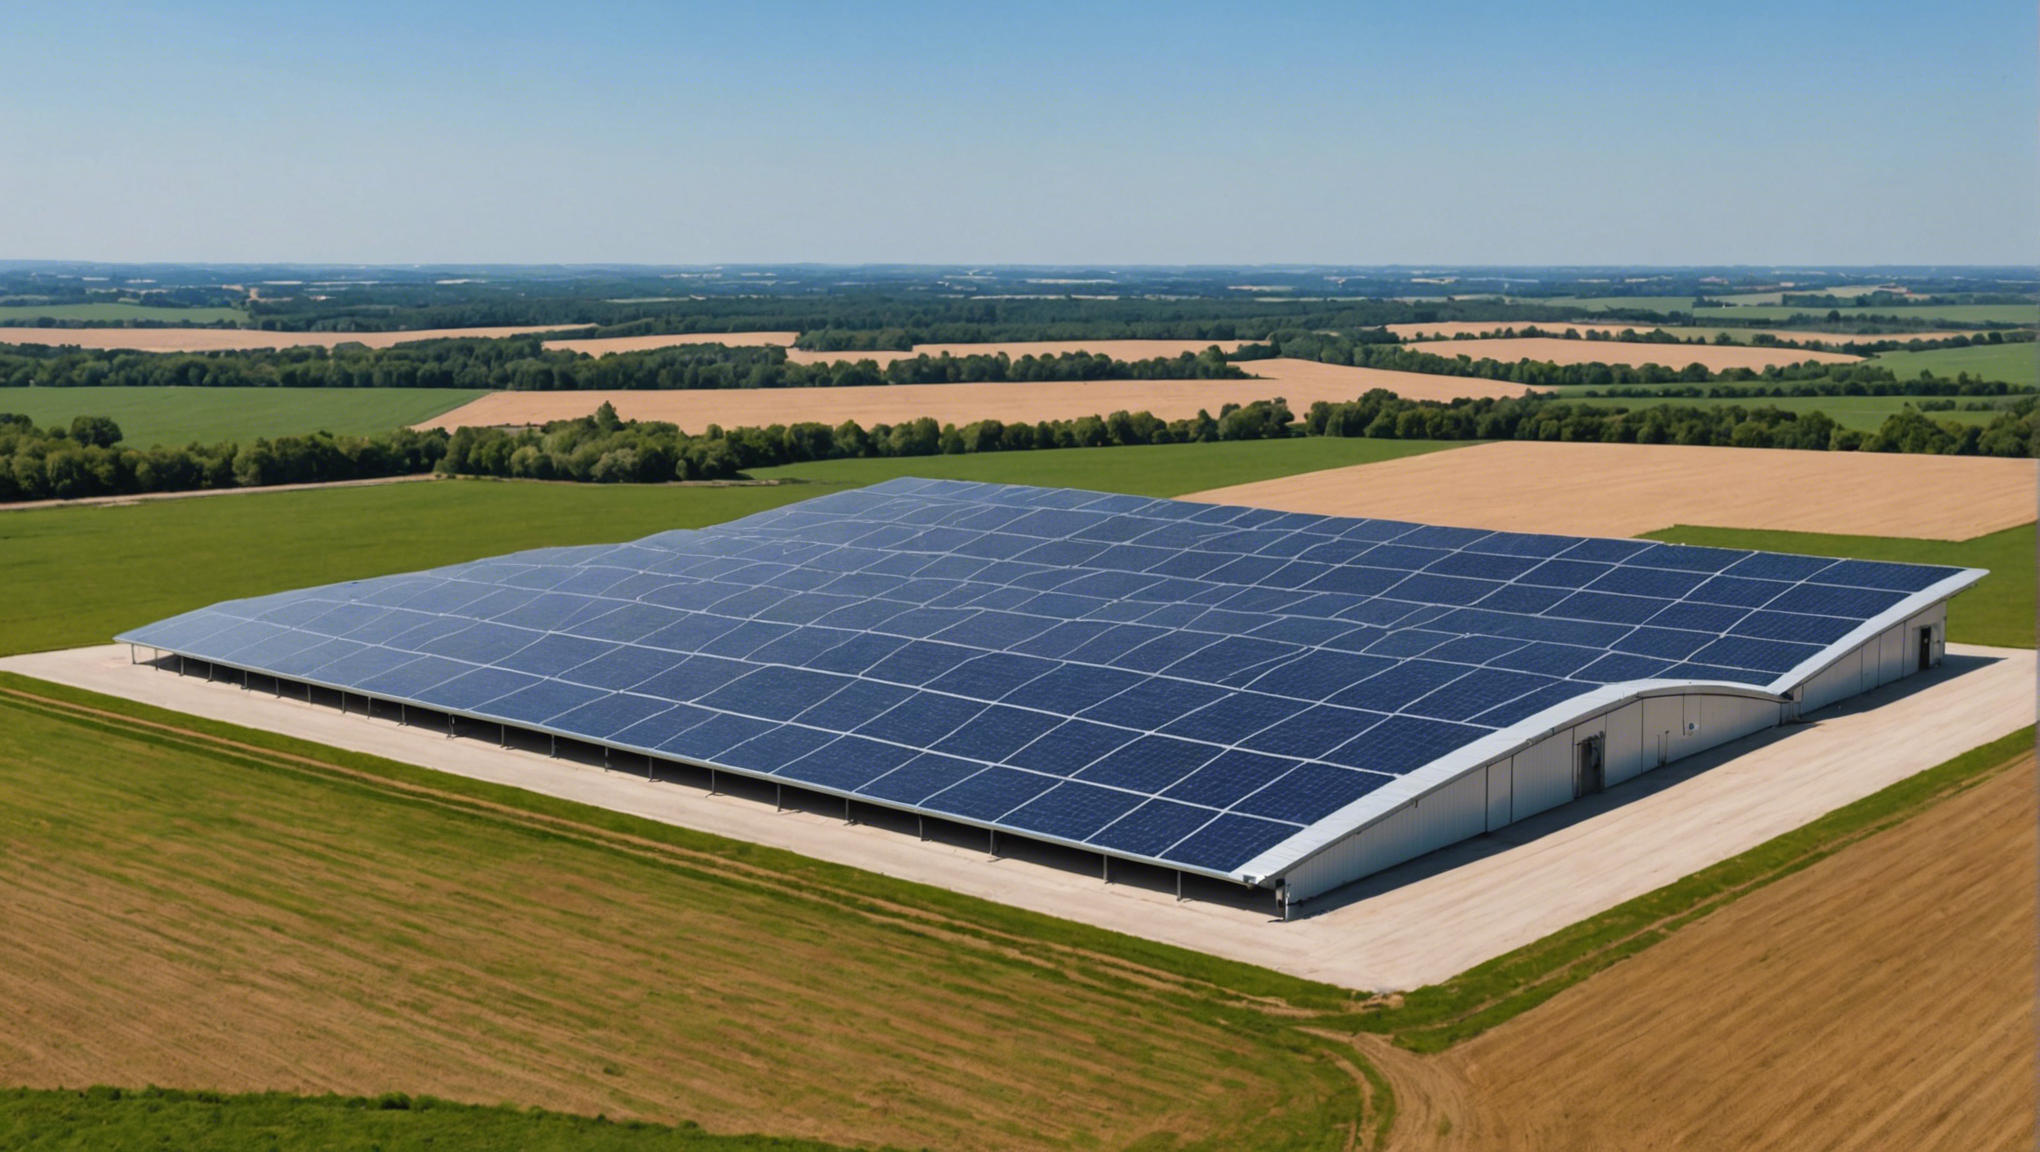 découvrez les nombreux avantages du hangar agricole photovoltaïque proposé par arkolia energies pour augmenter vos revenus tout en préservant l'environnement.